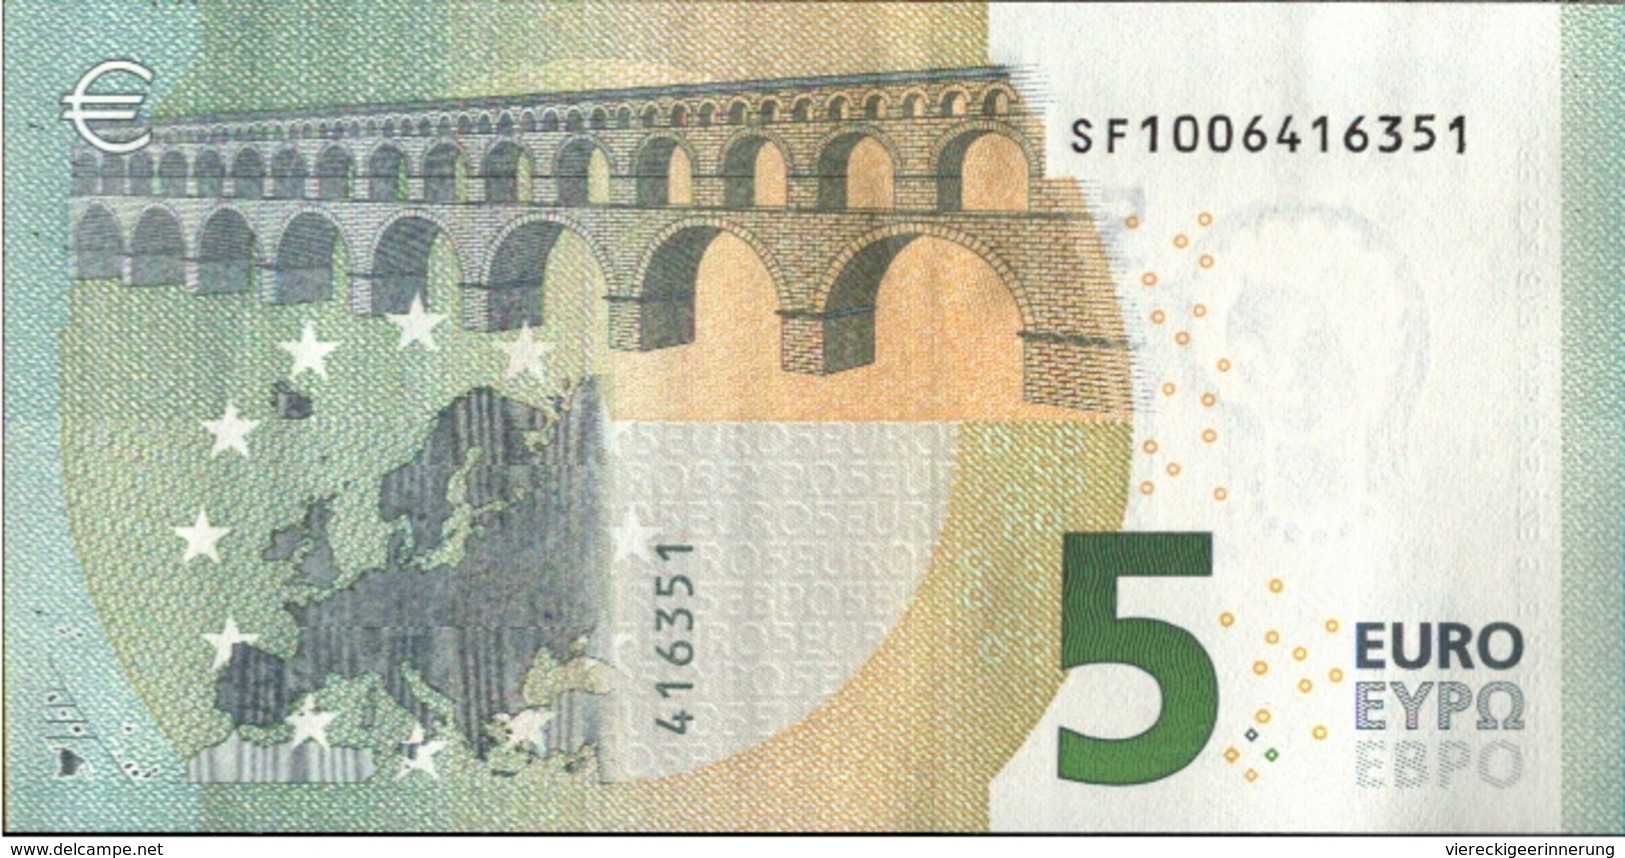 ! 5 Euro Unc., S001A1, SF1006416351 Currency, Banknote, Billet Mario Draghi, EZB, Europäische Zentralbank - 5 Euro